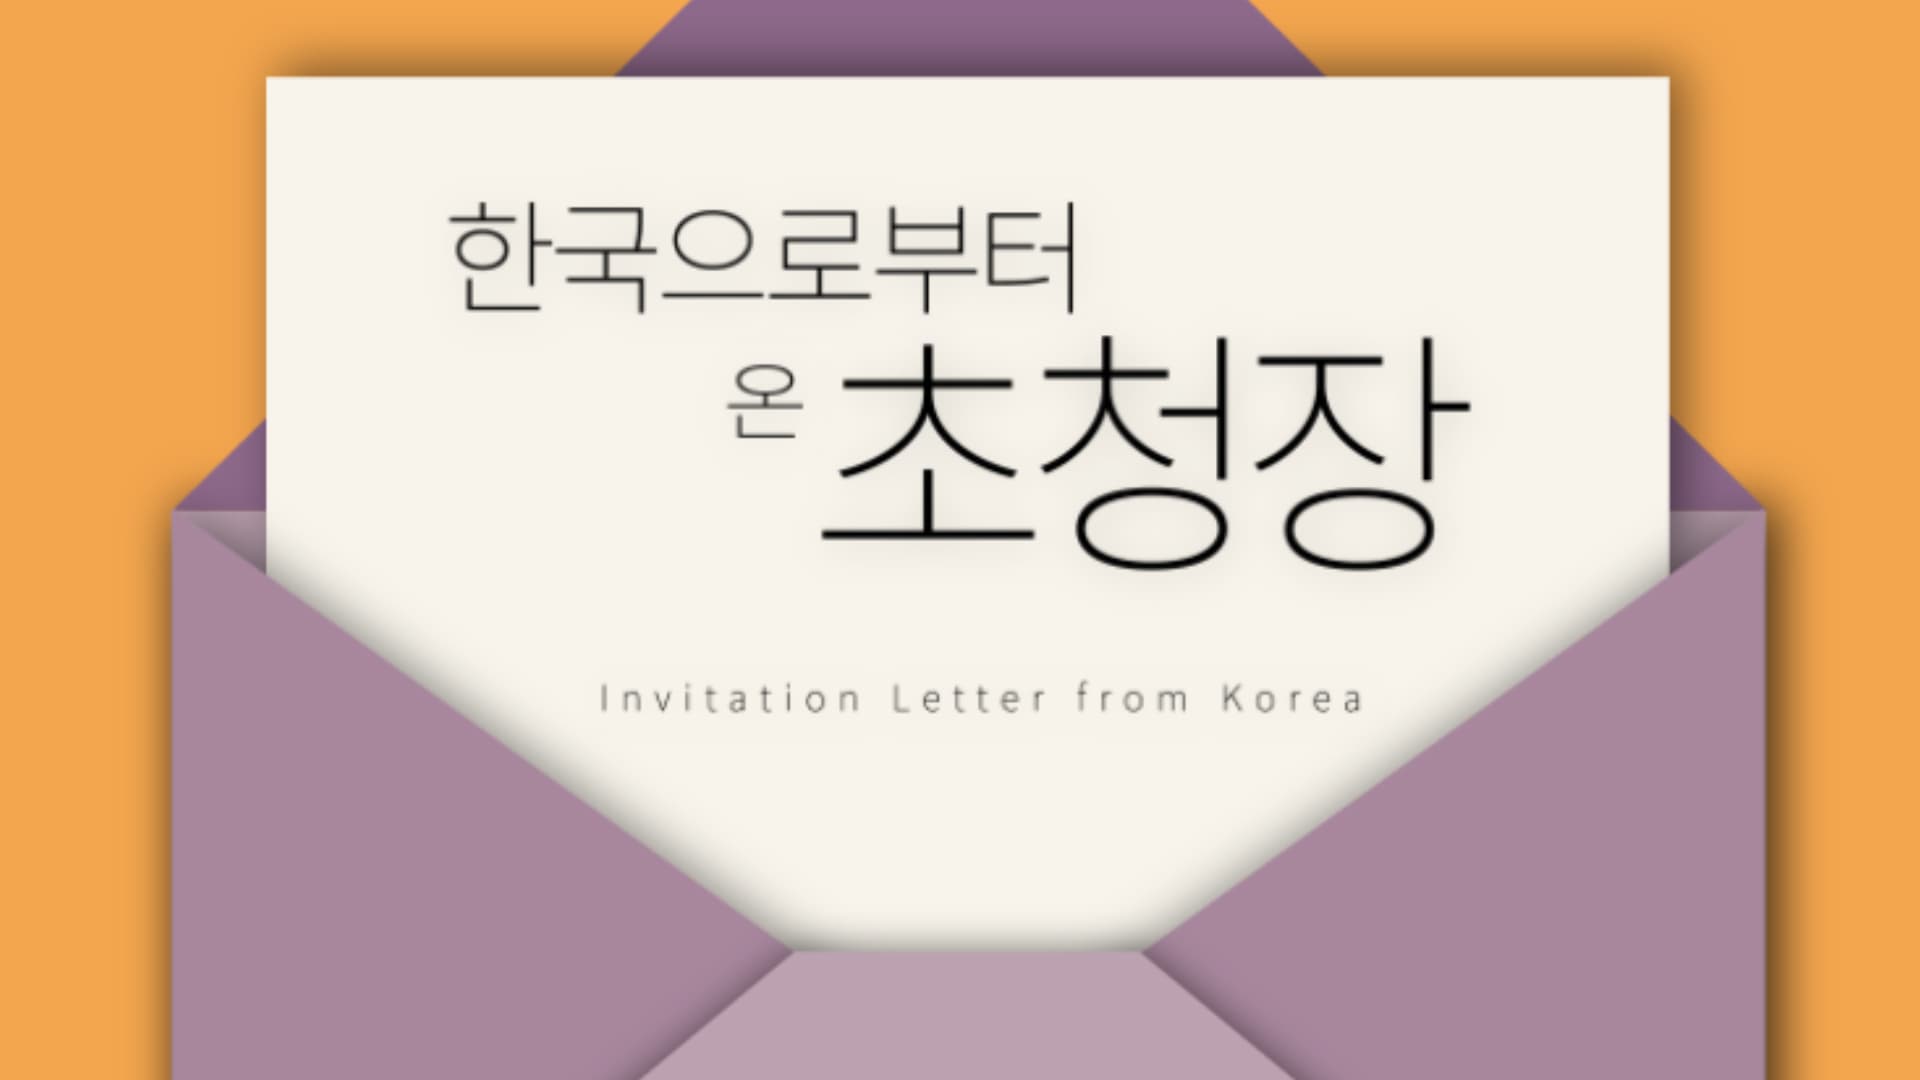 [해외문화PD 기획영상] 한국으로부터 온 초청장